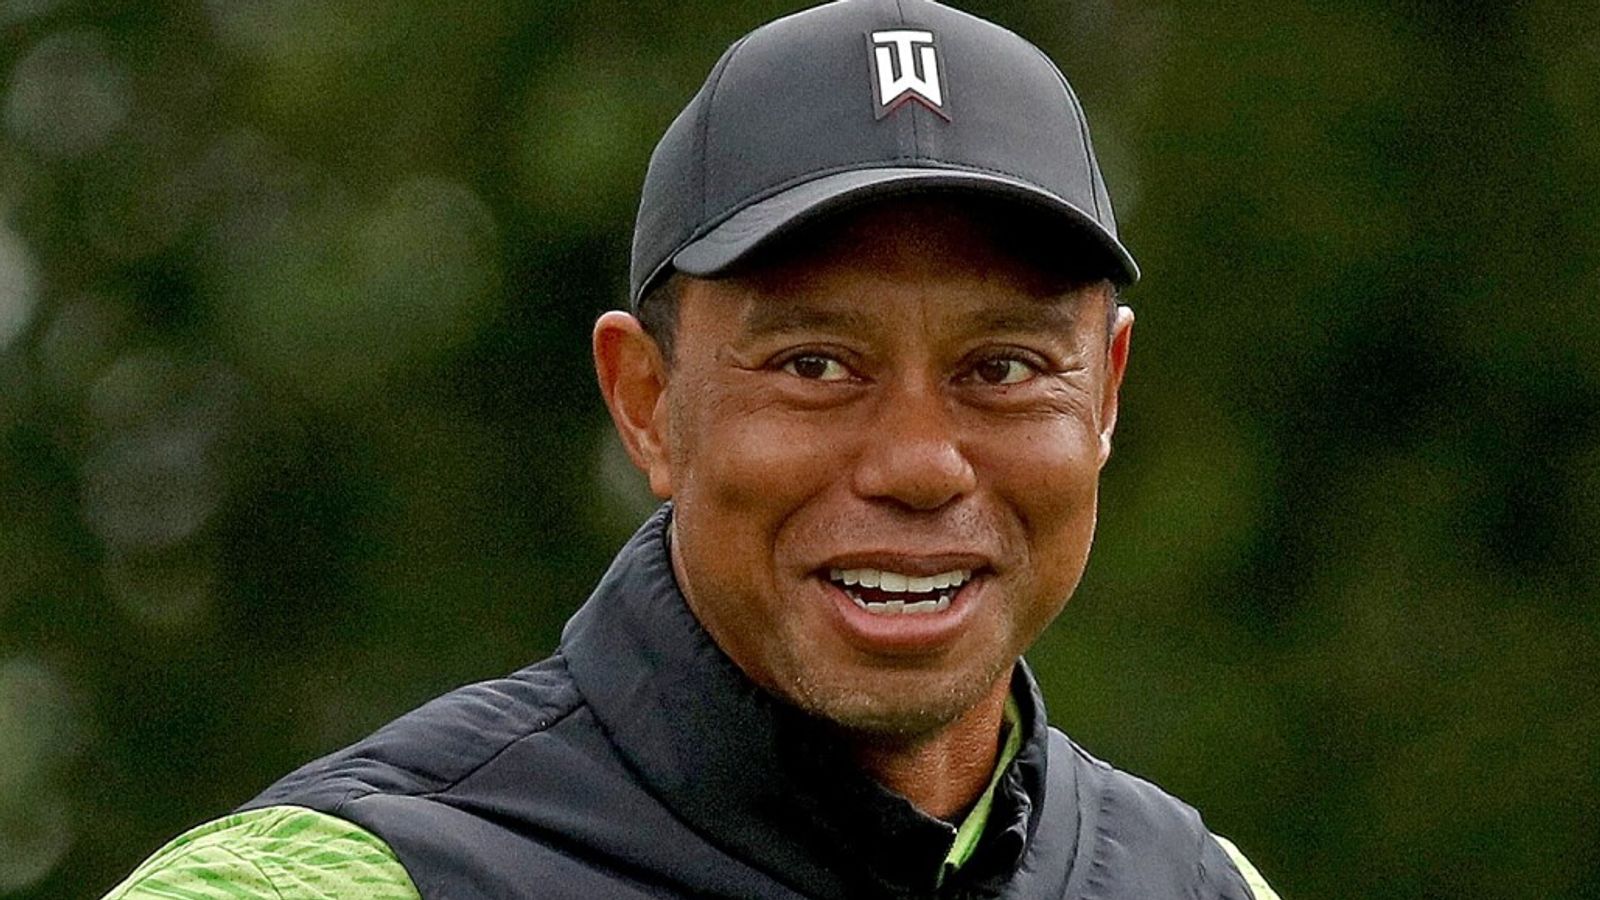 JP McManus Pro-Am: Tiger Woods kesulitan untuk membuka 77 saat Xander Schauffele melaju di Adare Manor |  berita golf